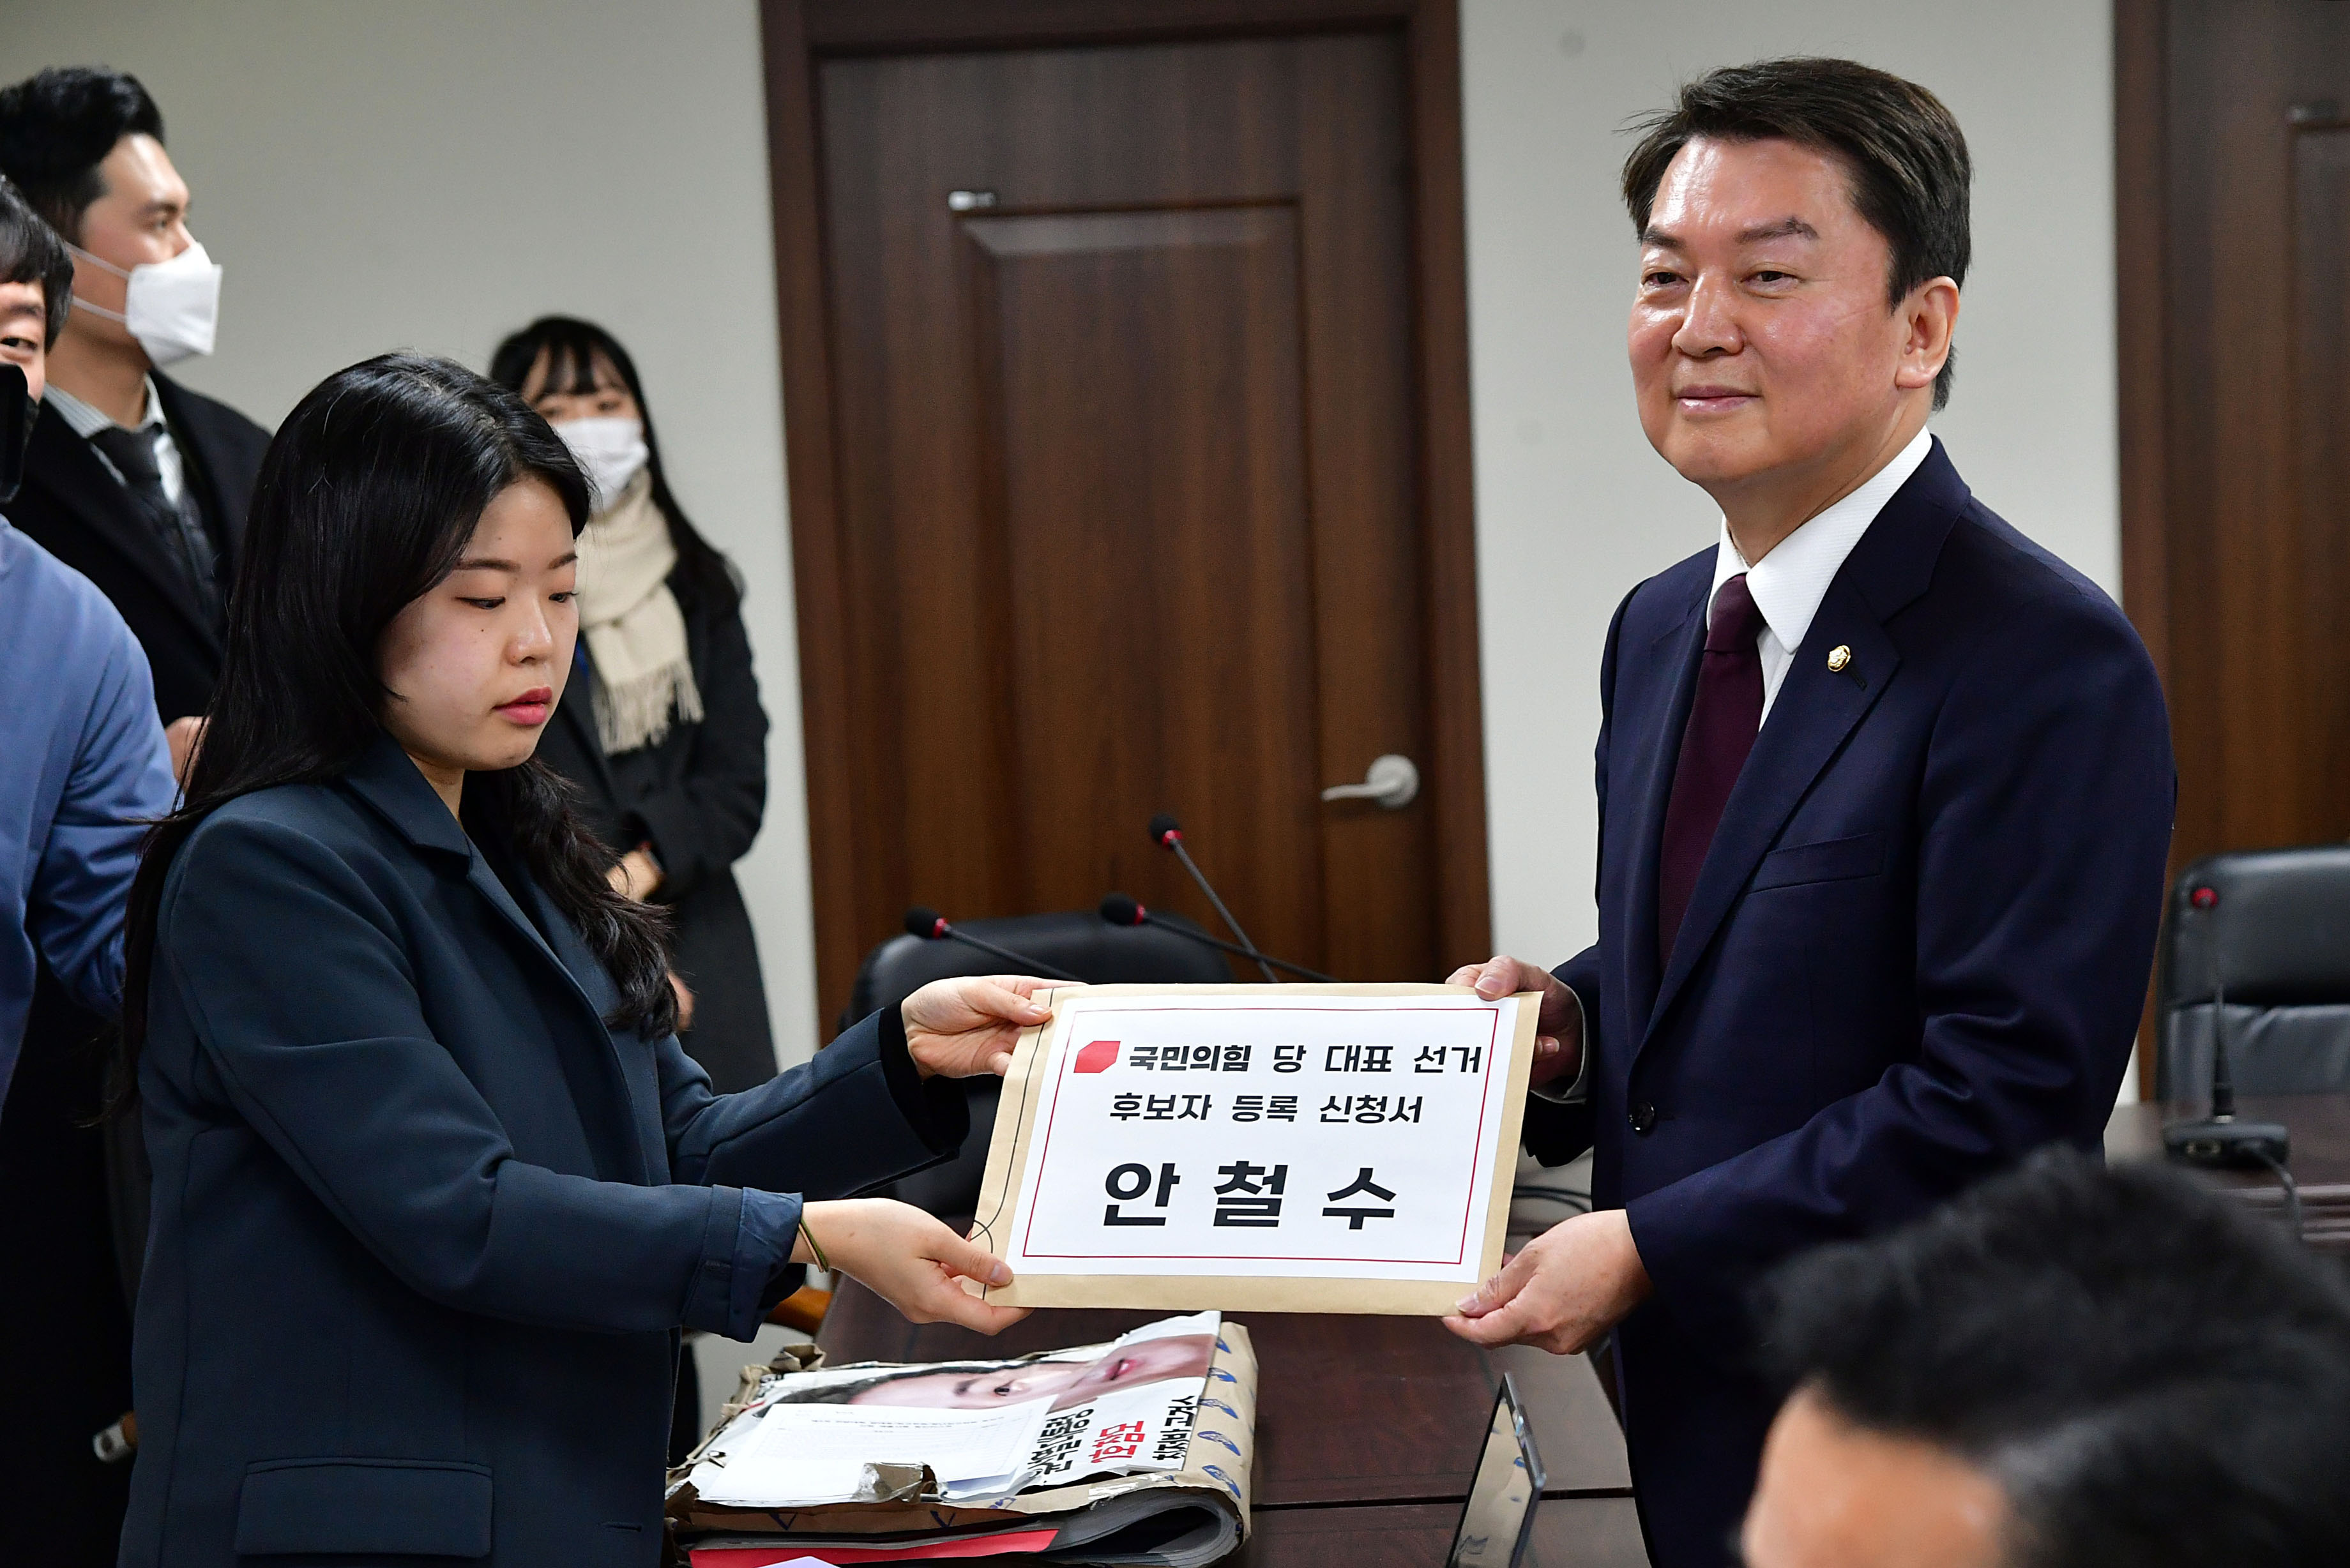 국민의힘 당권주자인 안철수 의원이 지난 2일 서울 여의도 중앙당사에서 당대표 후보 등록을 하고 있다. 서울신문 DB